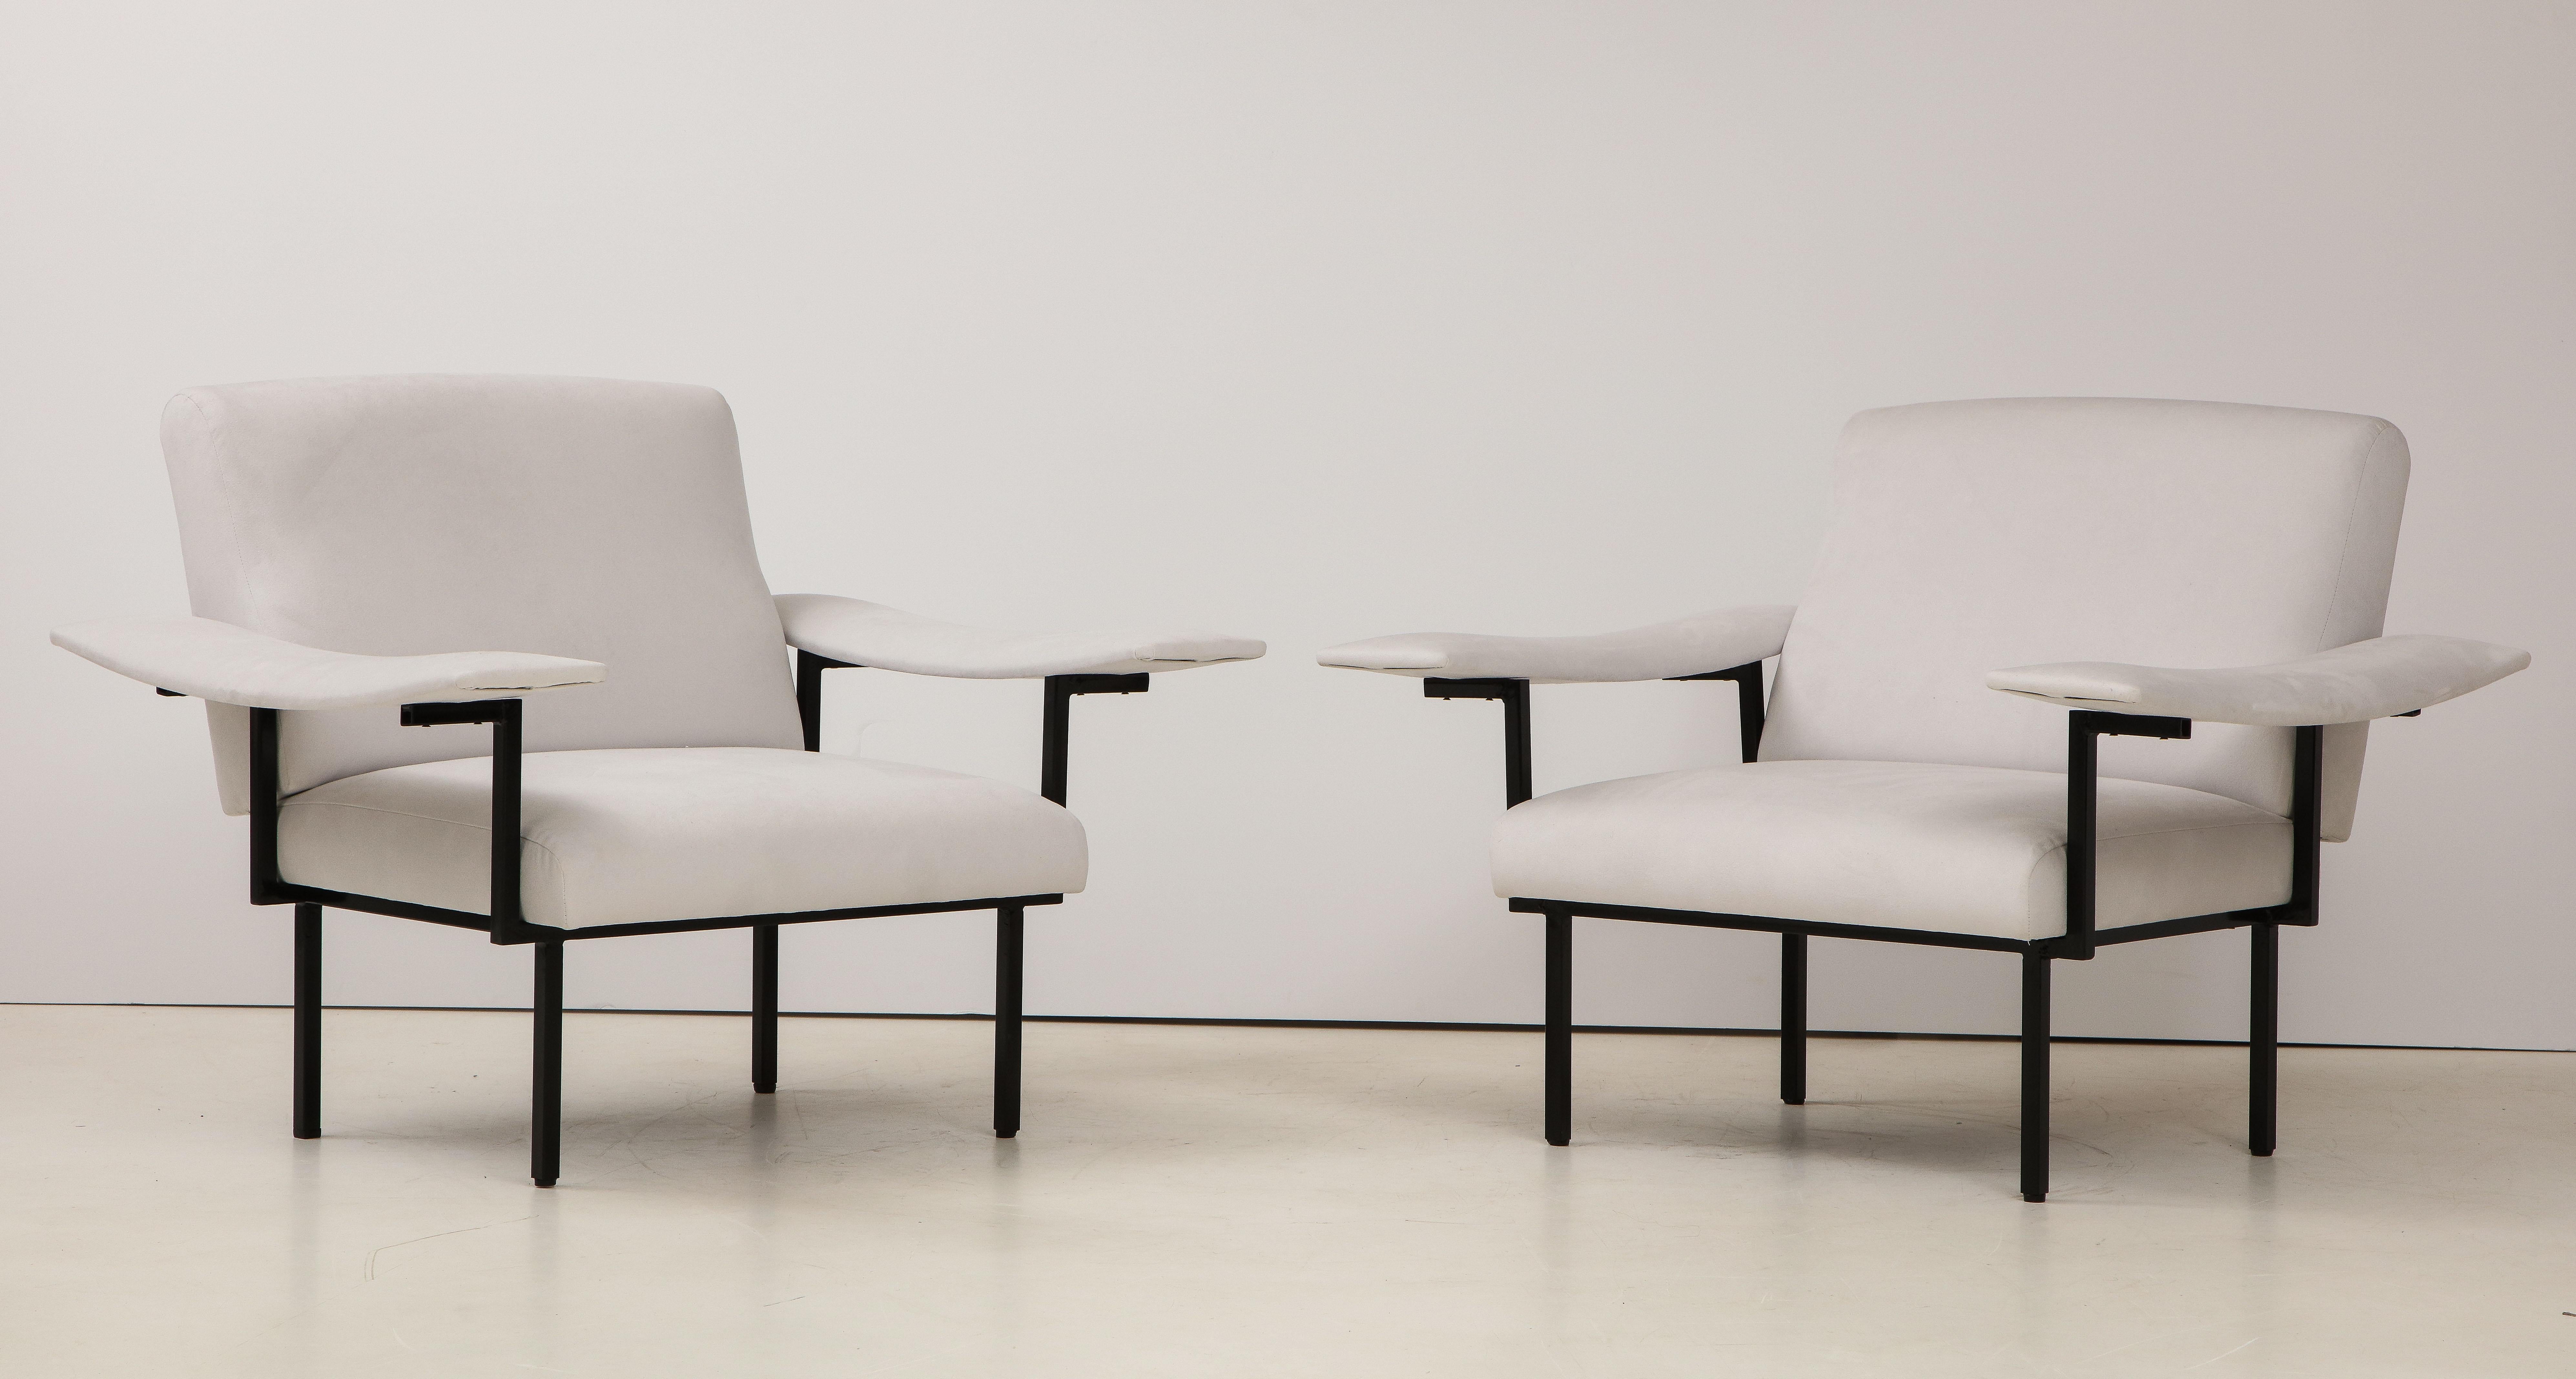 Une paire de fauteuils italiens modernes, élégants et uniques, dont la structure en fer supporte une large assise, un dossier et un accoudoir extra large qui s'étend jusqu'au dos du fauteuil. Ils ont été récemment recouverts d'un daim gris doux